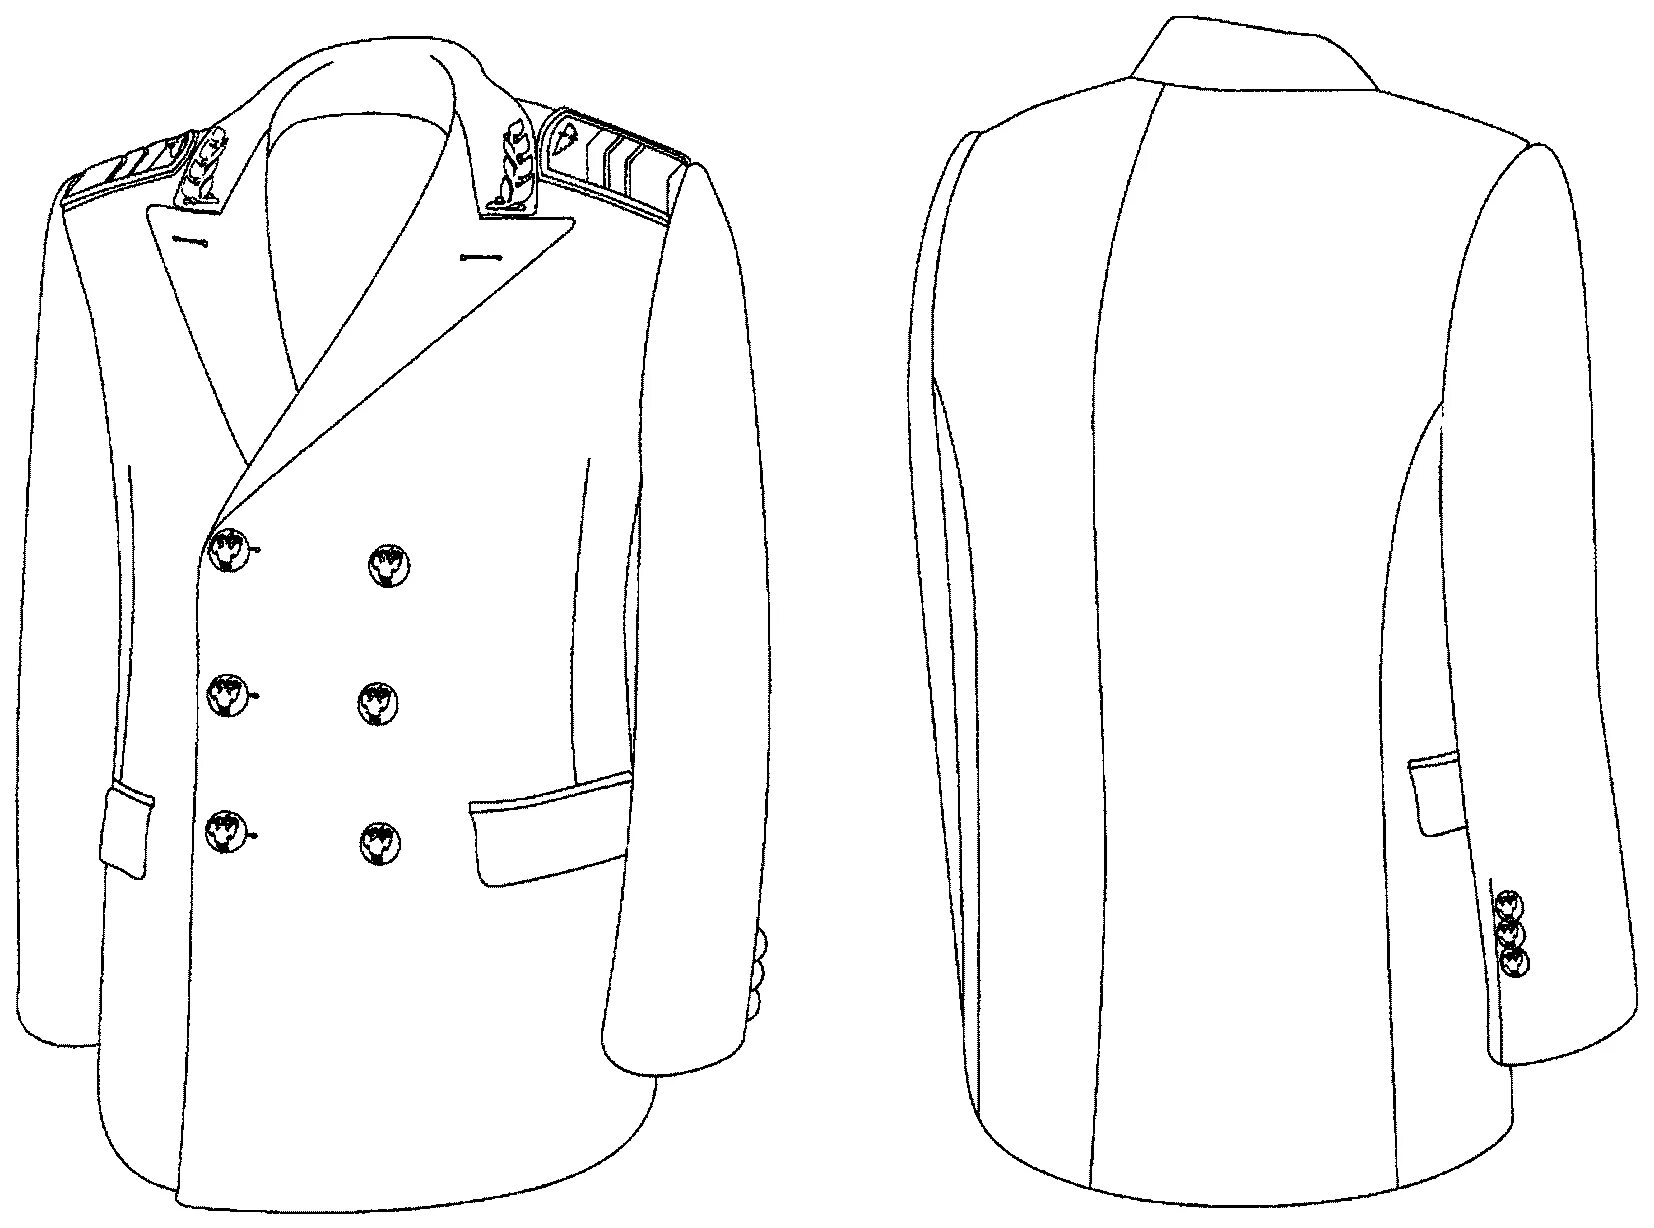 Двубортная домашняя или форменная куртка. Китель. Технический рисунок пиджака. Пиджак мужской рисунок. Технический эскиз пиджака сбоку.